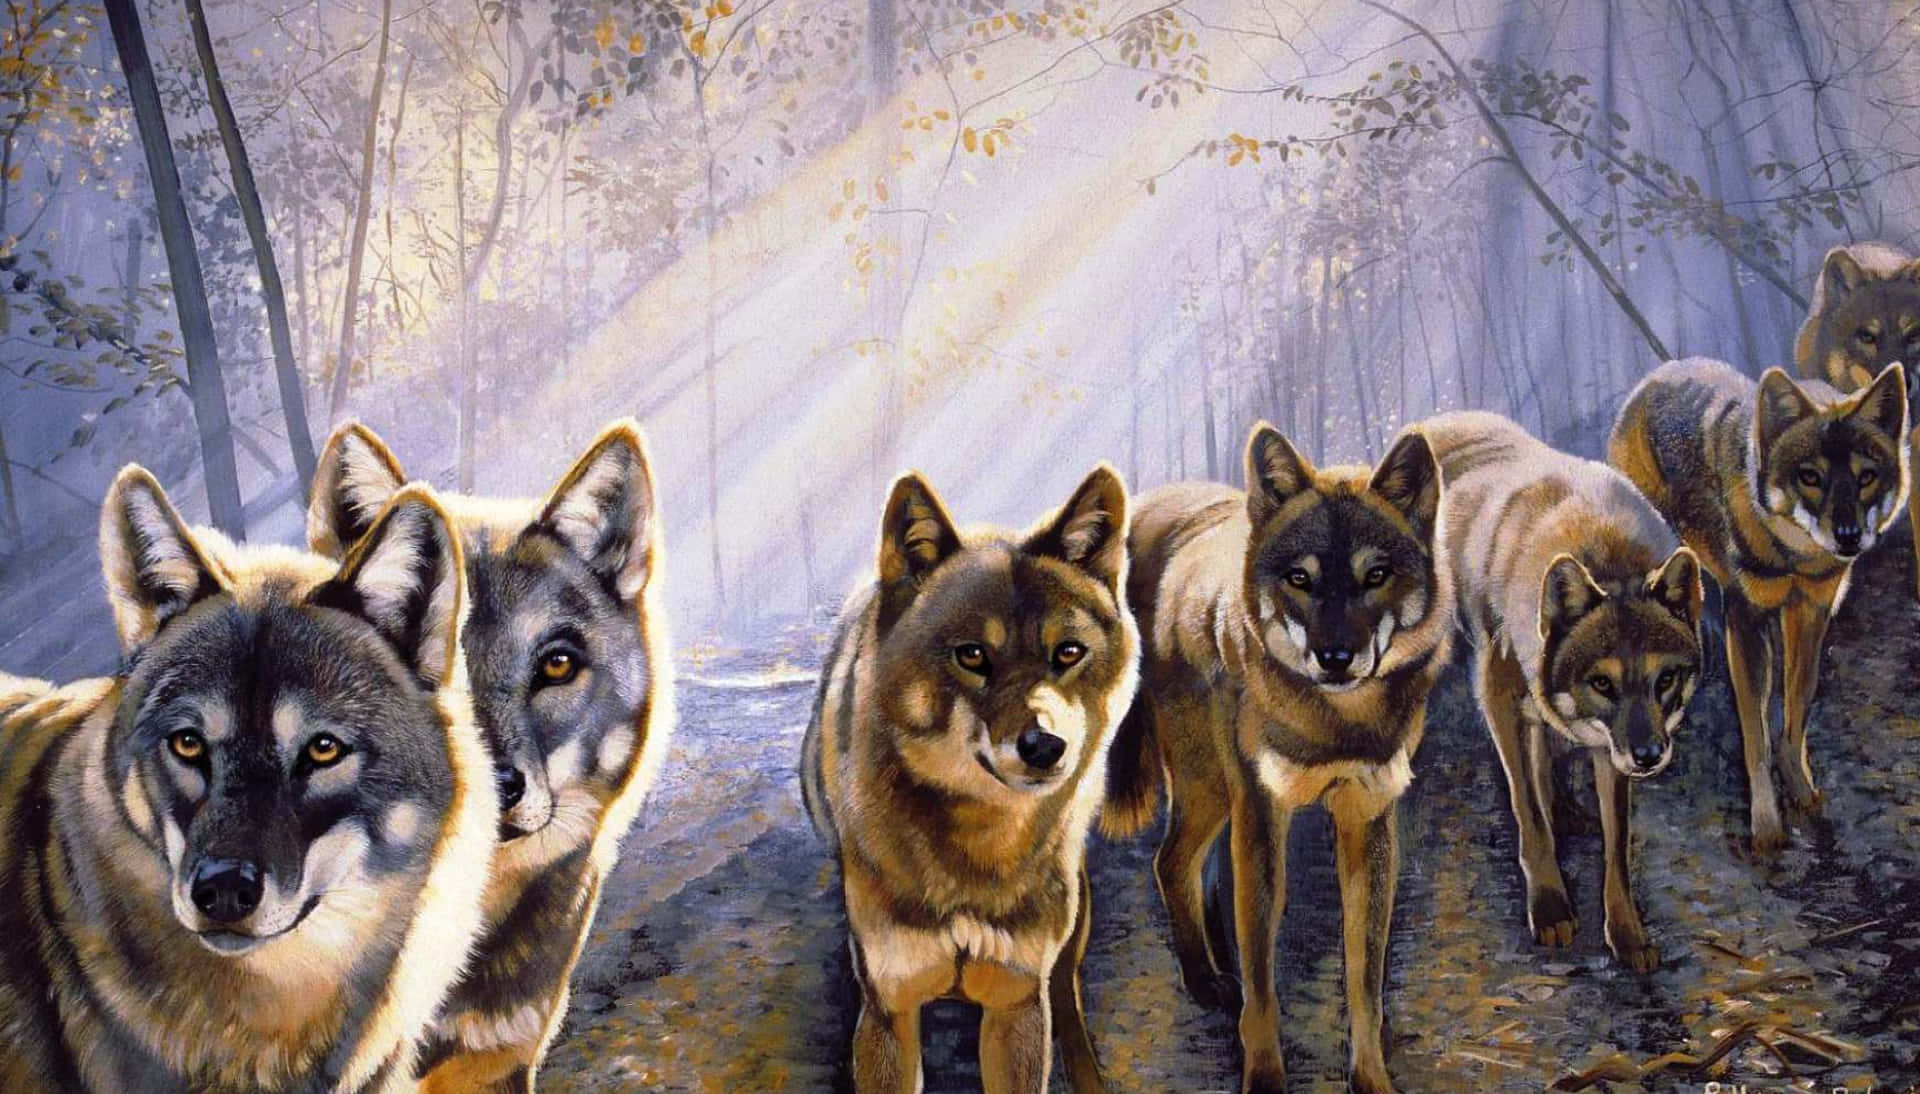 Kig ind i øjnene på disse søde ulve og se styrken og kraften af ​​natur. Wallpaper